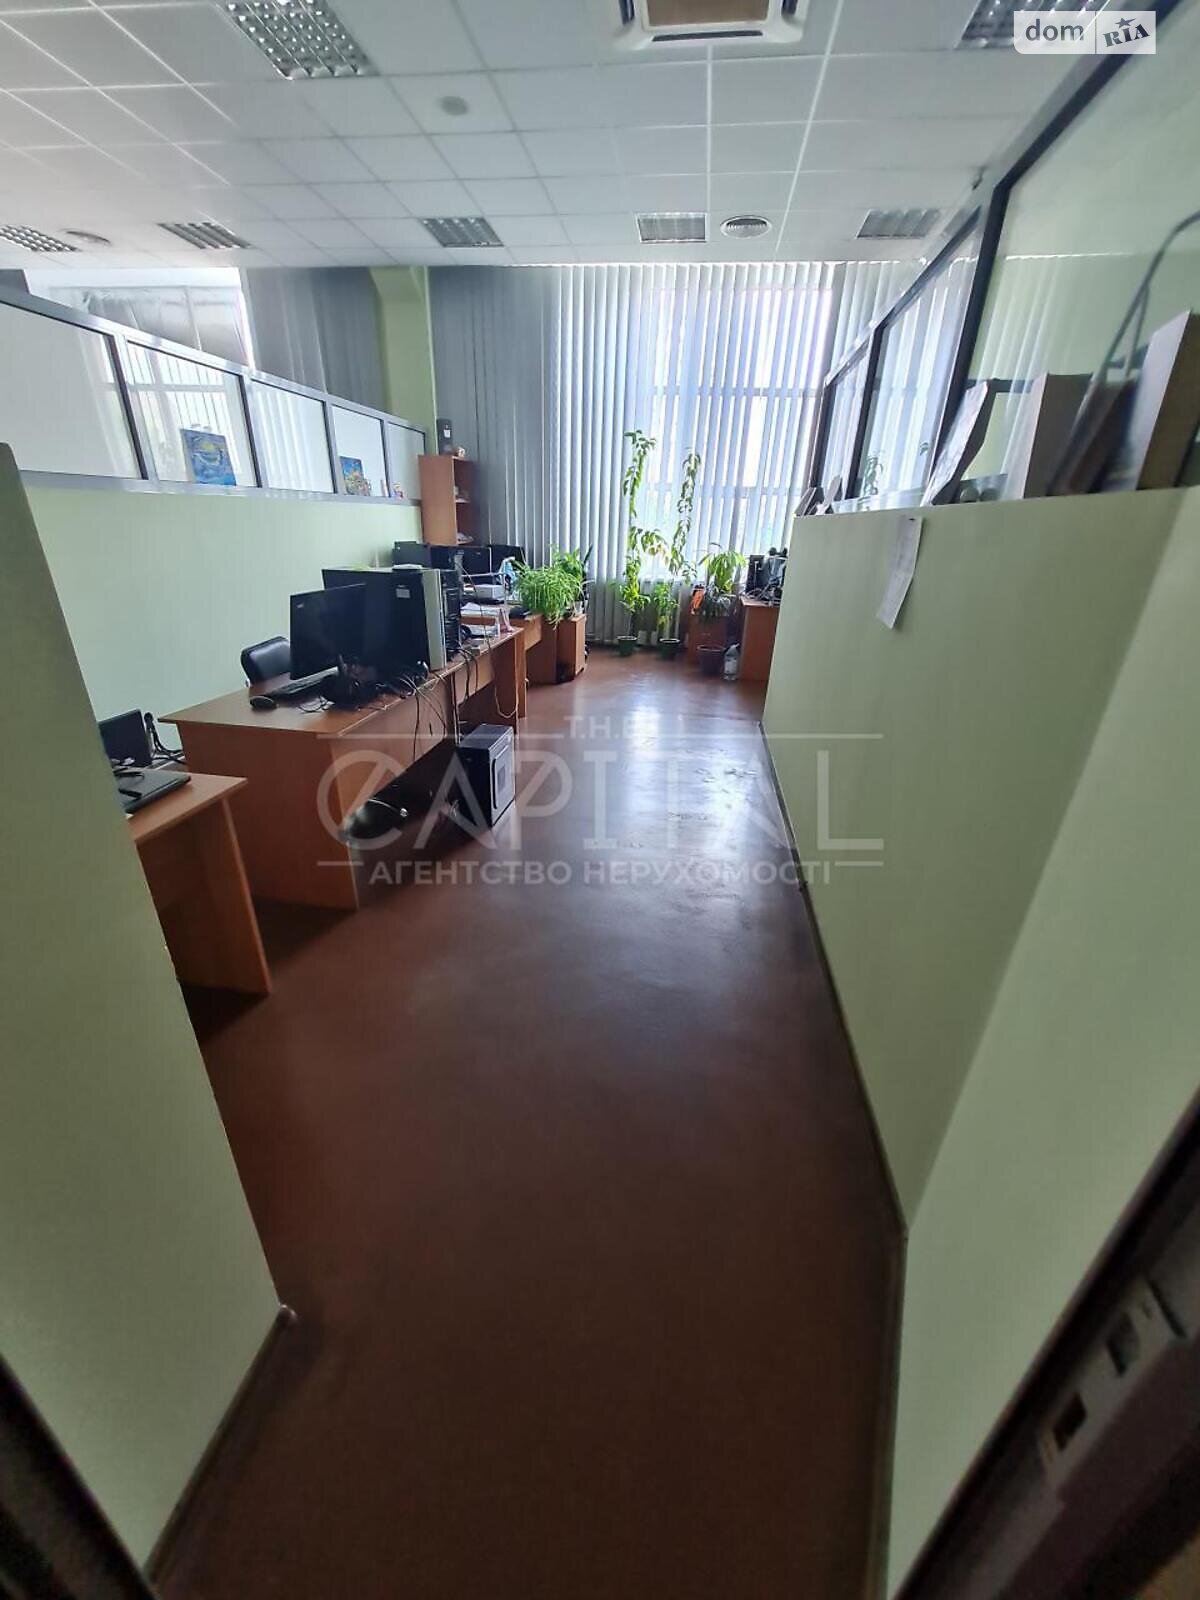 Аренда офисного помещения в Киеве, Василия Сурикова 3А, помещений - 1, этаж - 4 фото 1